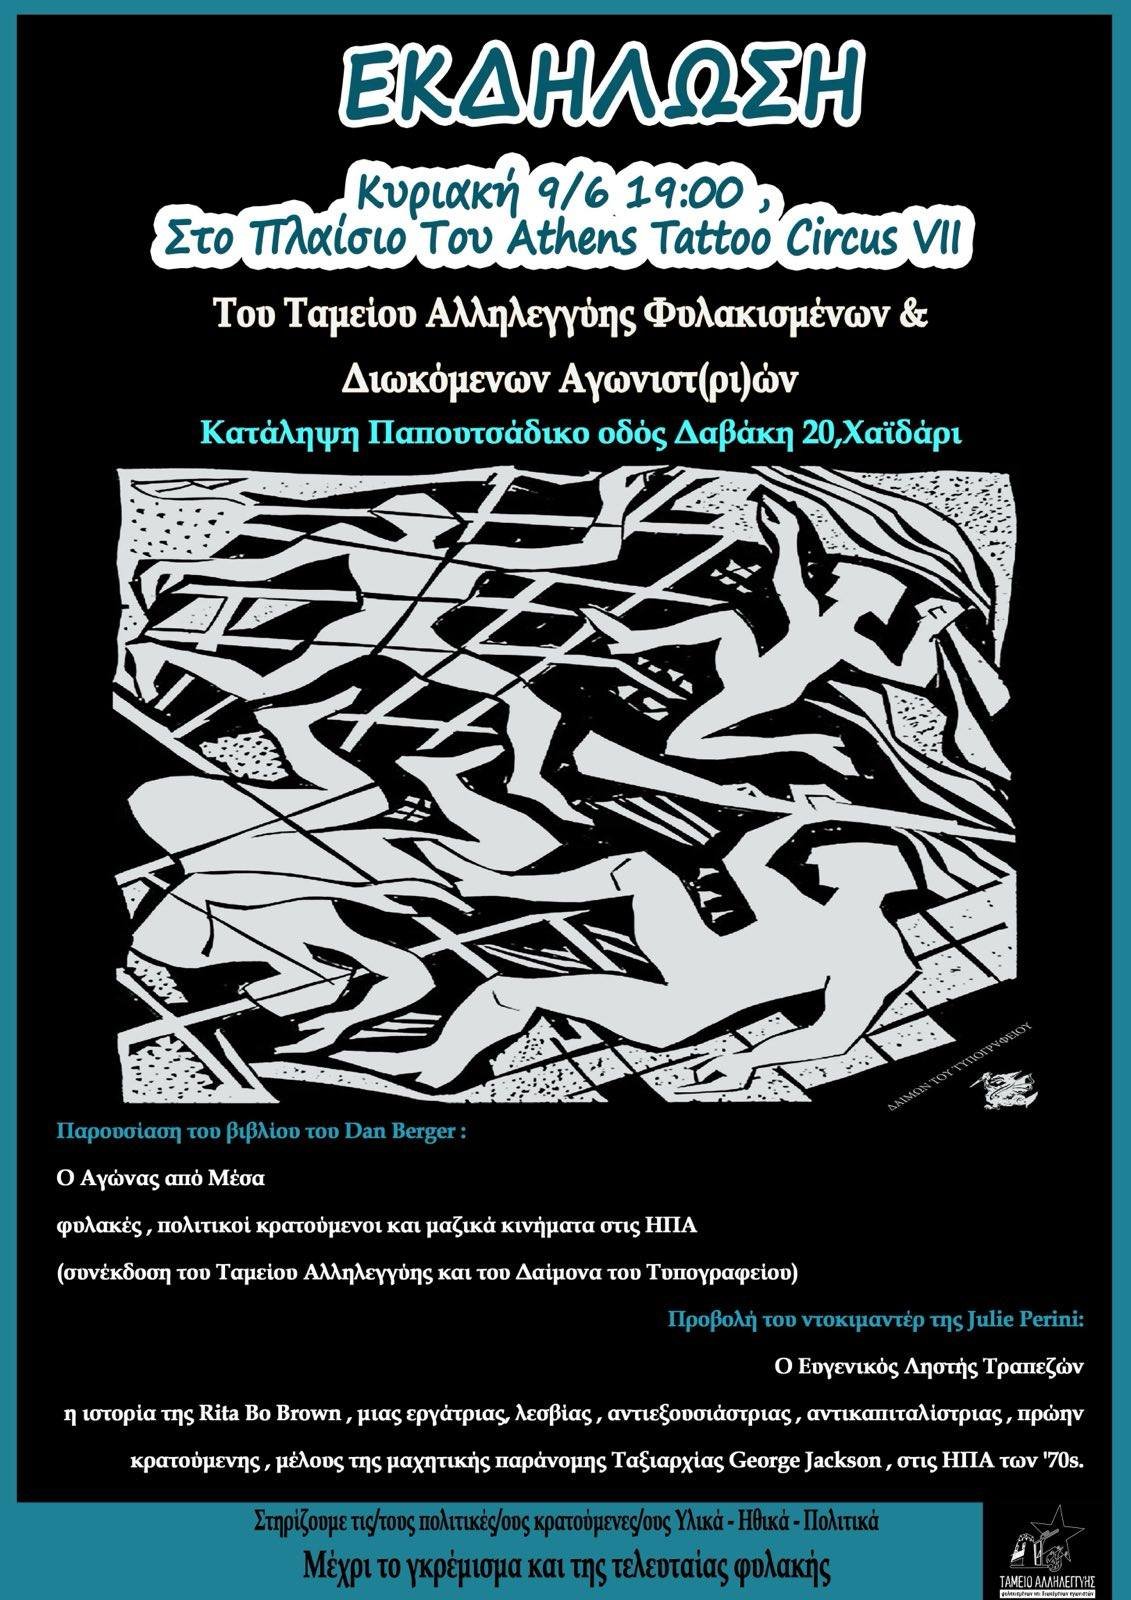 [Αθήνα] Εκδήλωση – Βιβλιοπαρουσίαση της συνέκδοσης του Ταμείου Αλληλεγγύης και του Δαίμονα του Τυπογραφείου “Ο Αγώνας από μέσα” (Κυριακή 9/6,19:00 // Κατάληψη Παπουτσάδικο)